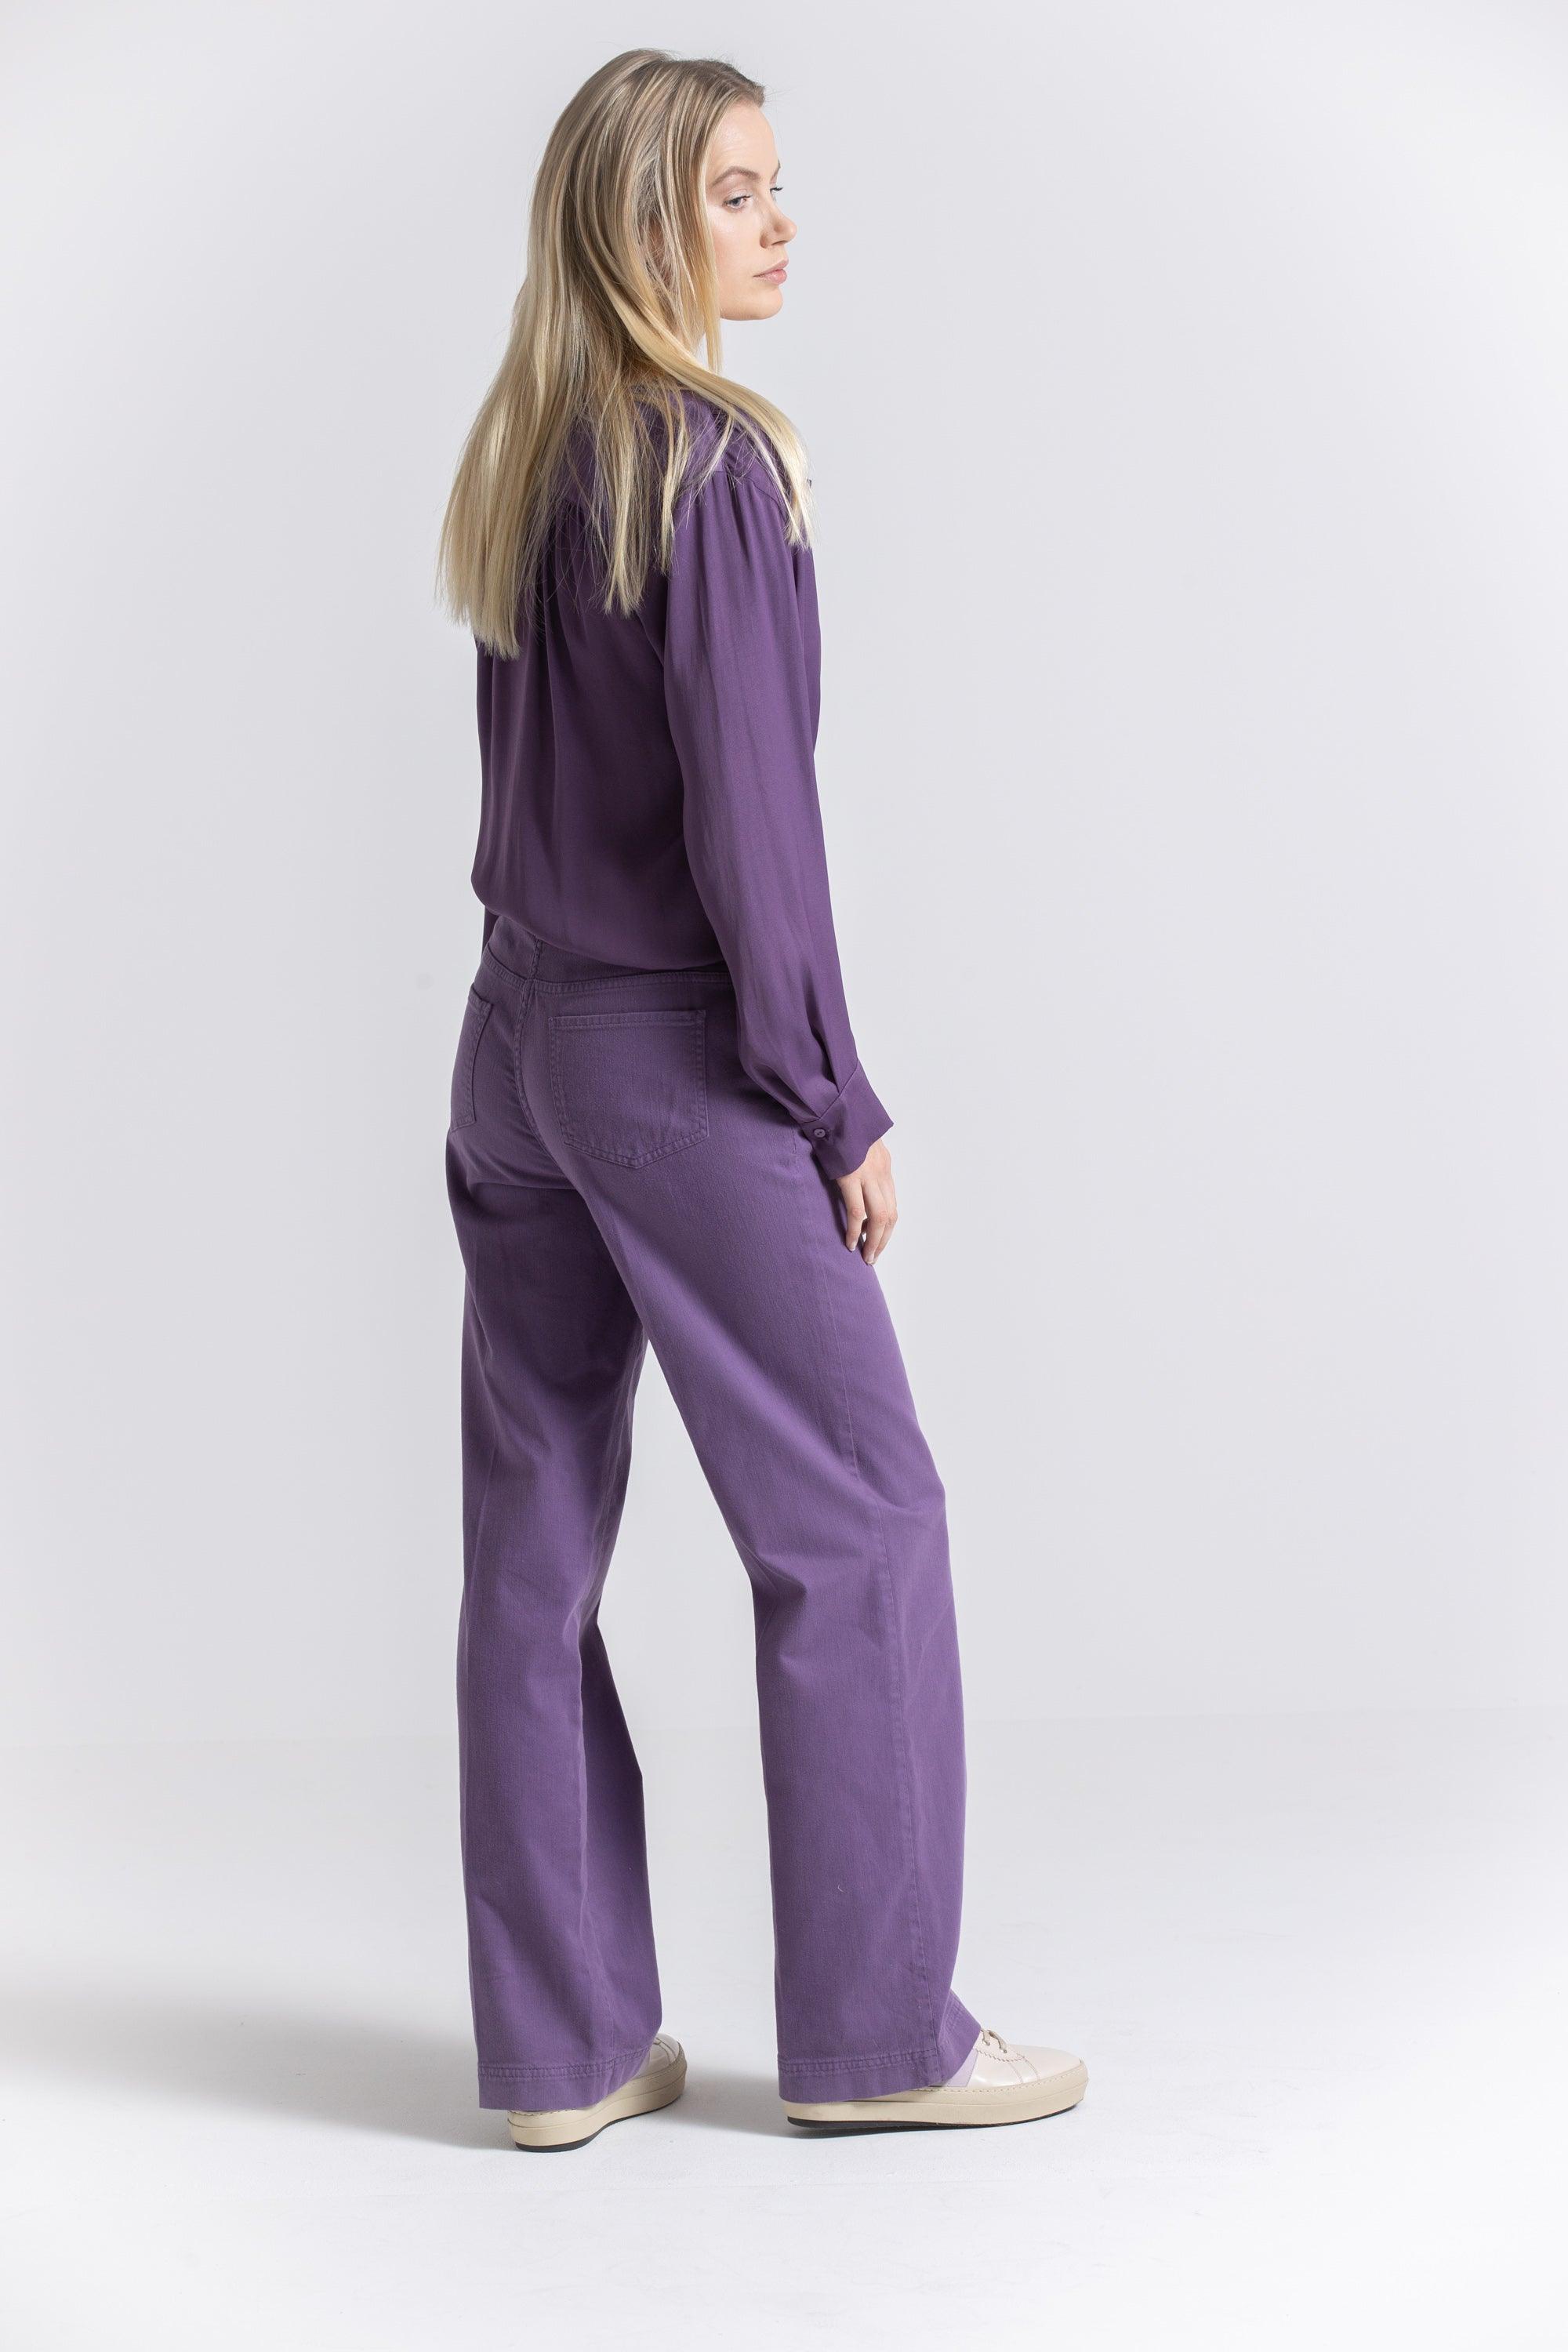 Broek Paars Gigue ( Ramska 710/2435 ) - Delaere Womenswear